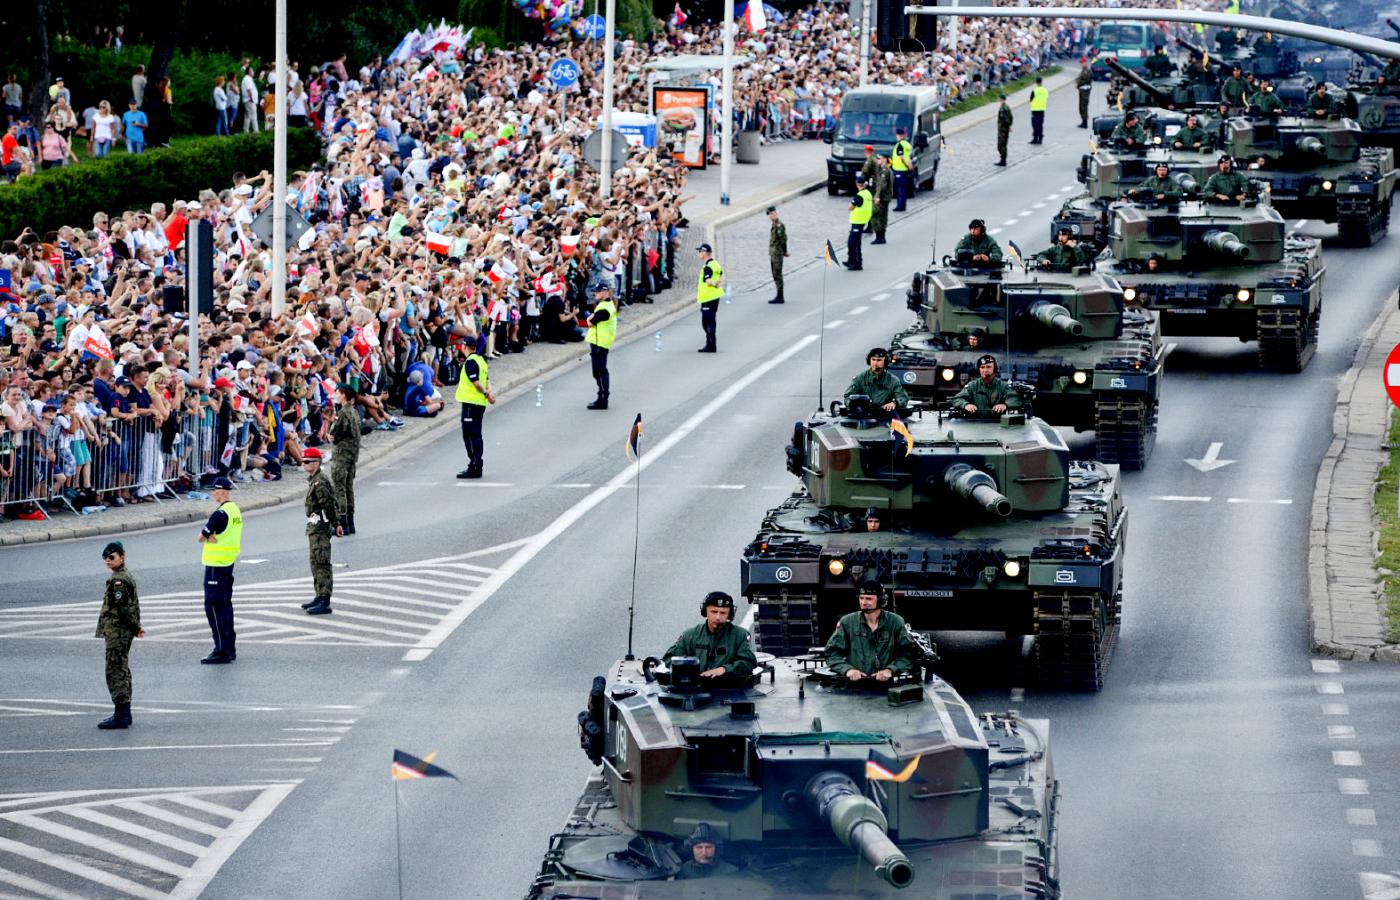 W dwóch poprzednich defiladach w dniu Święta Wojska Polskiego brało udział 100–200 tys. osób.